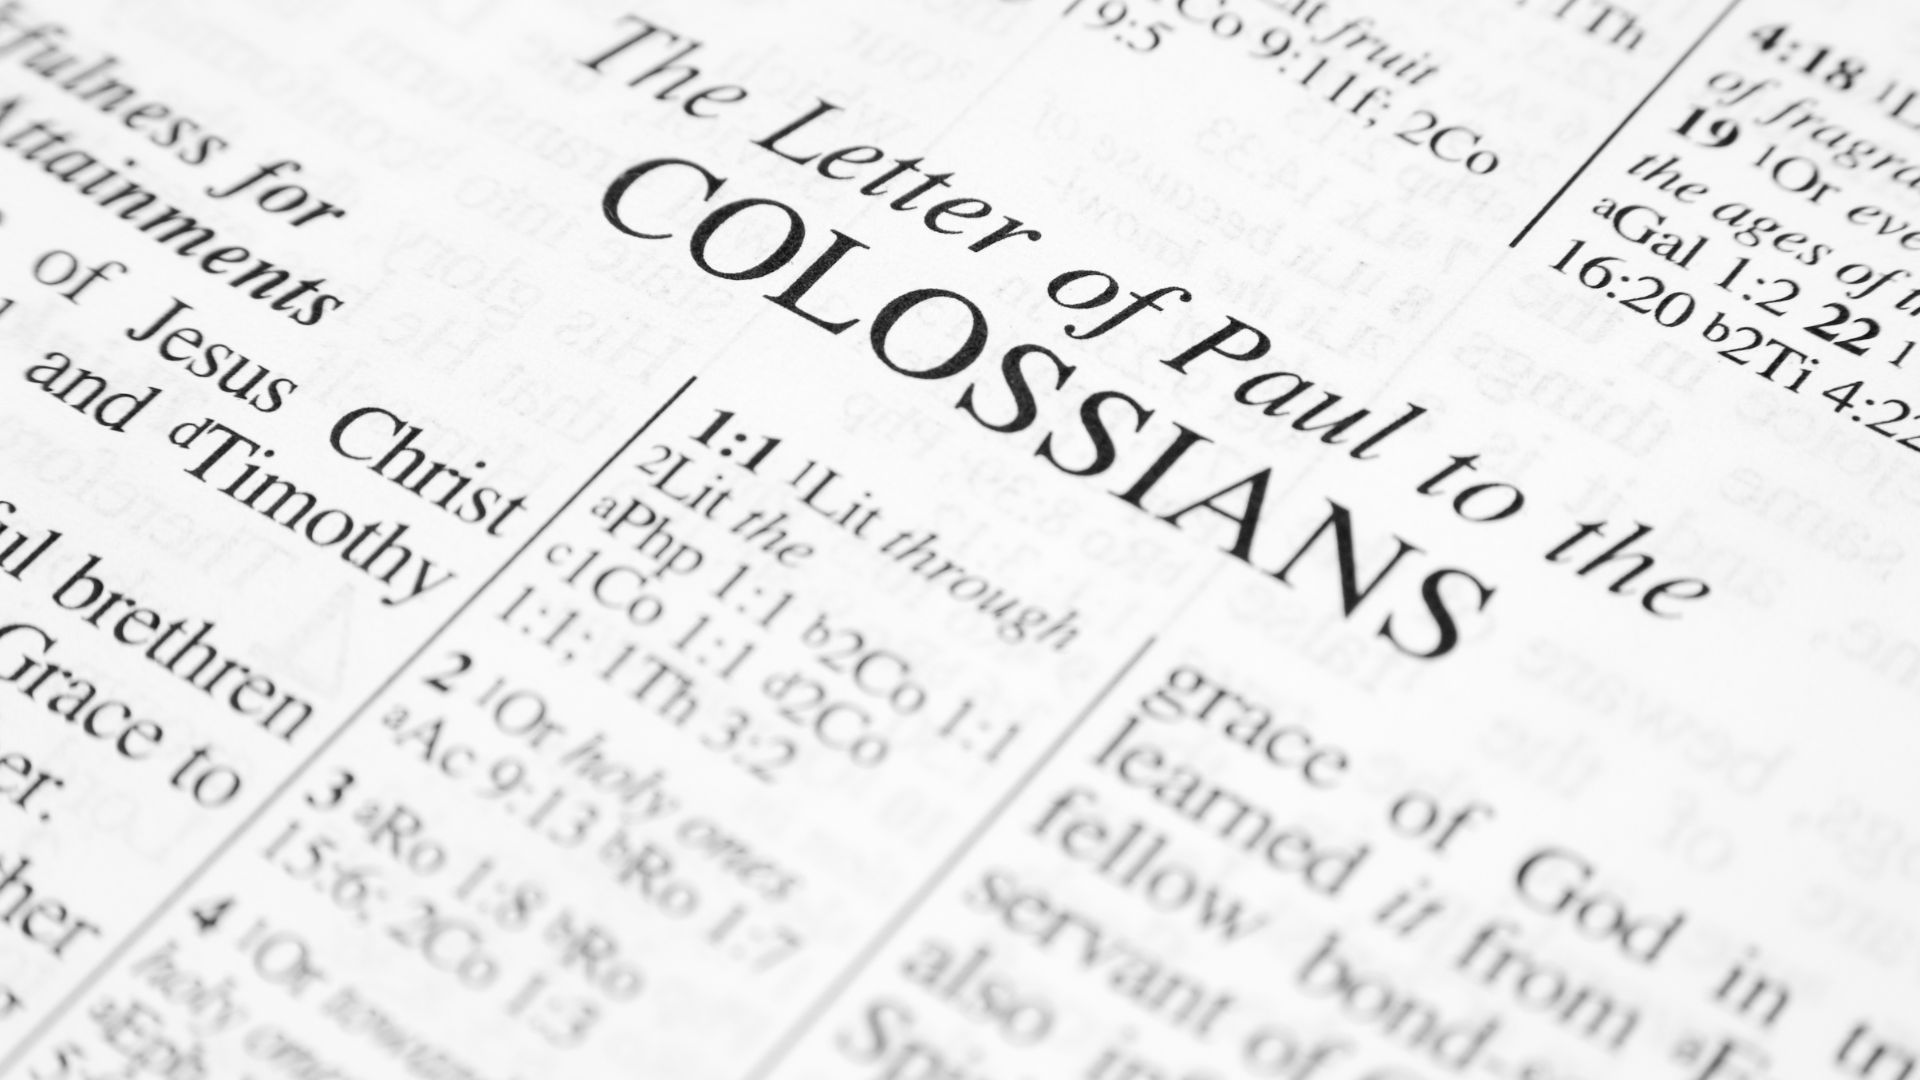 Bíblia aberta no livro de Colossenses (escrito em inglês)